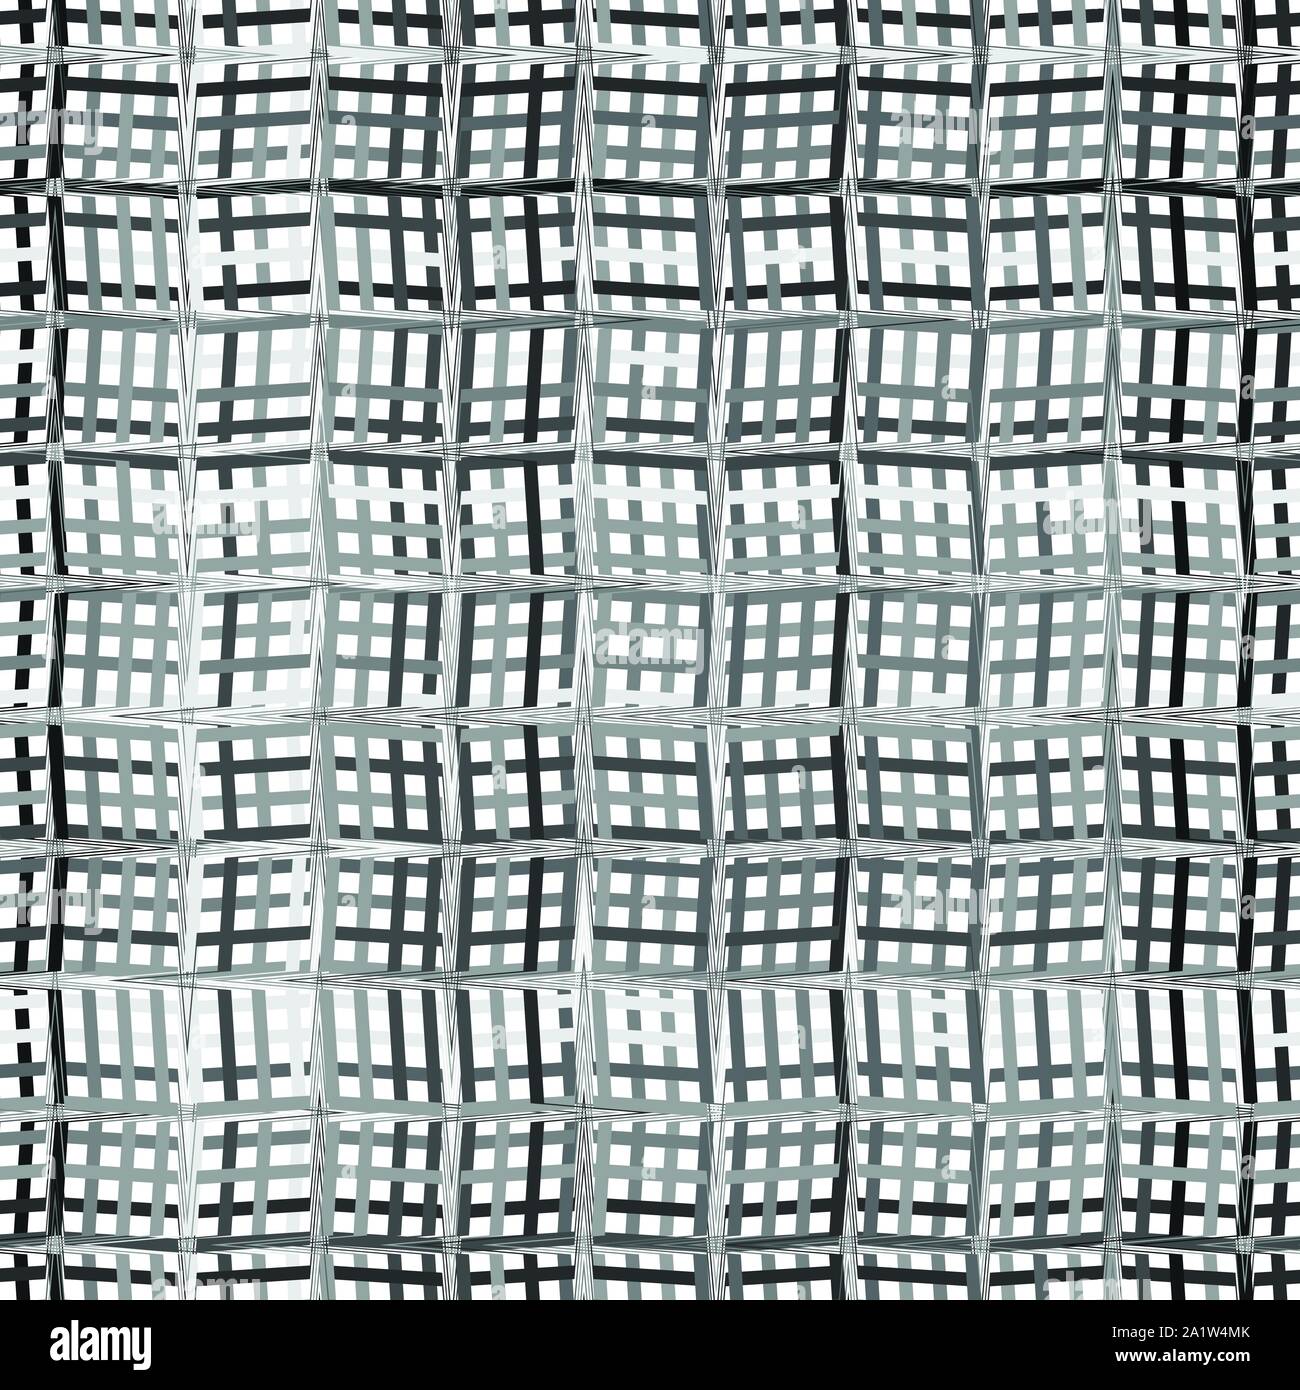 Komplizierte Graustufen geometrische Muster, die geometrische Struktur der asymmetrischen, dichten Leitungen mit Sturz, Webart Wirkung. Gekreuzt, Schneiden wellig, Zick-zack s Stock Vektor